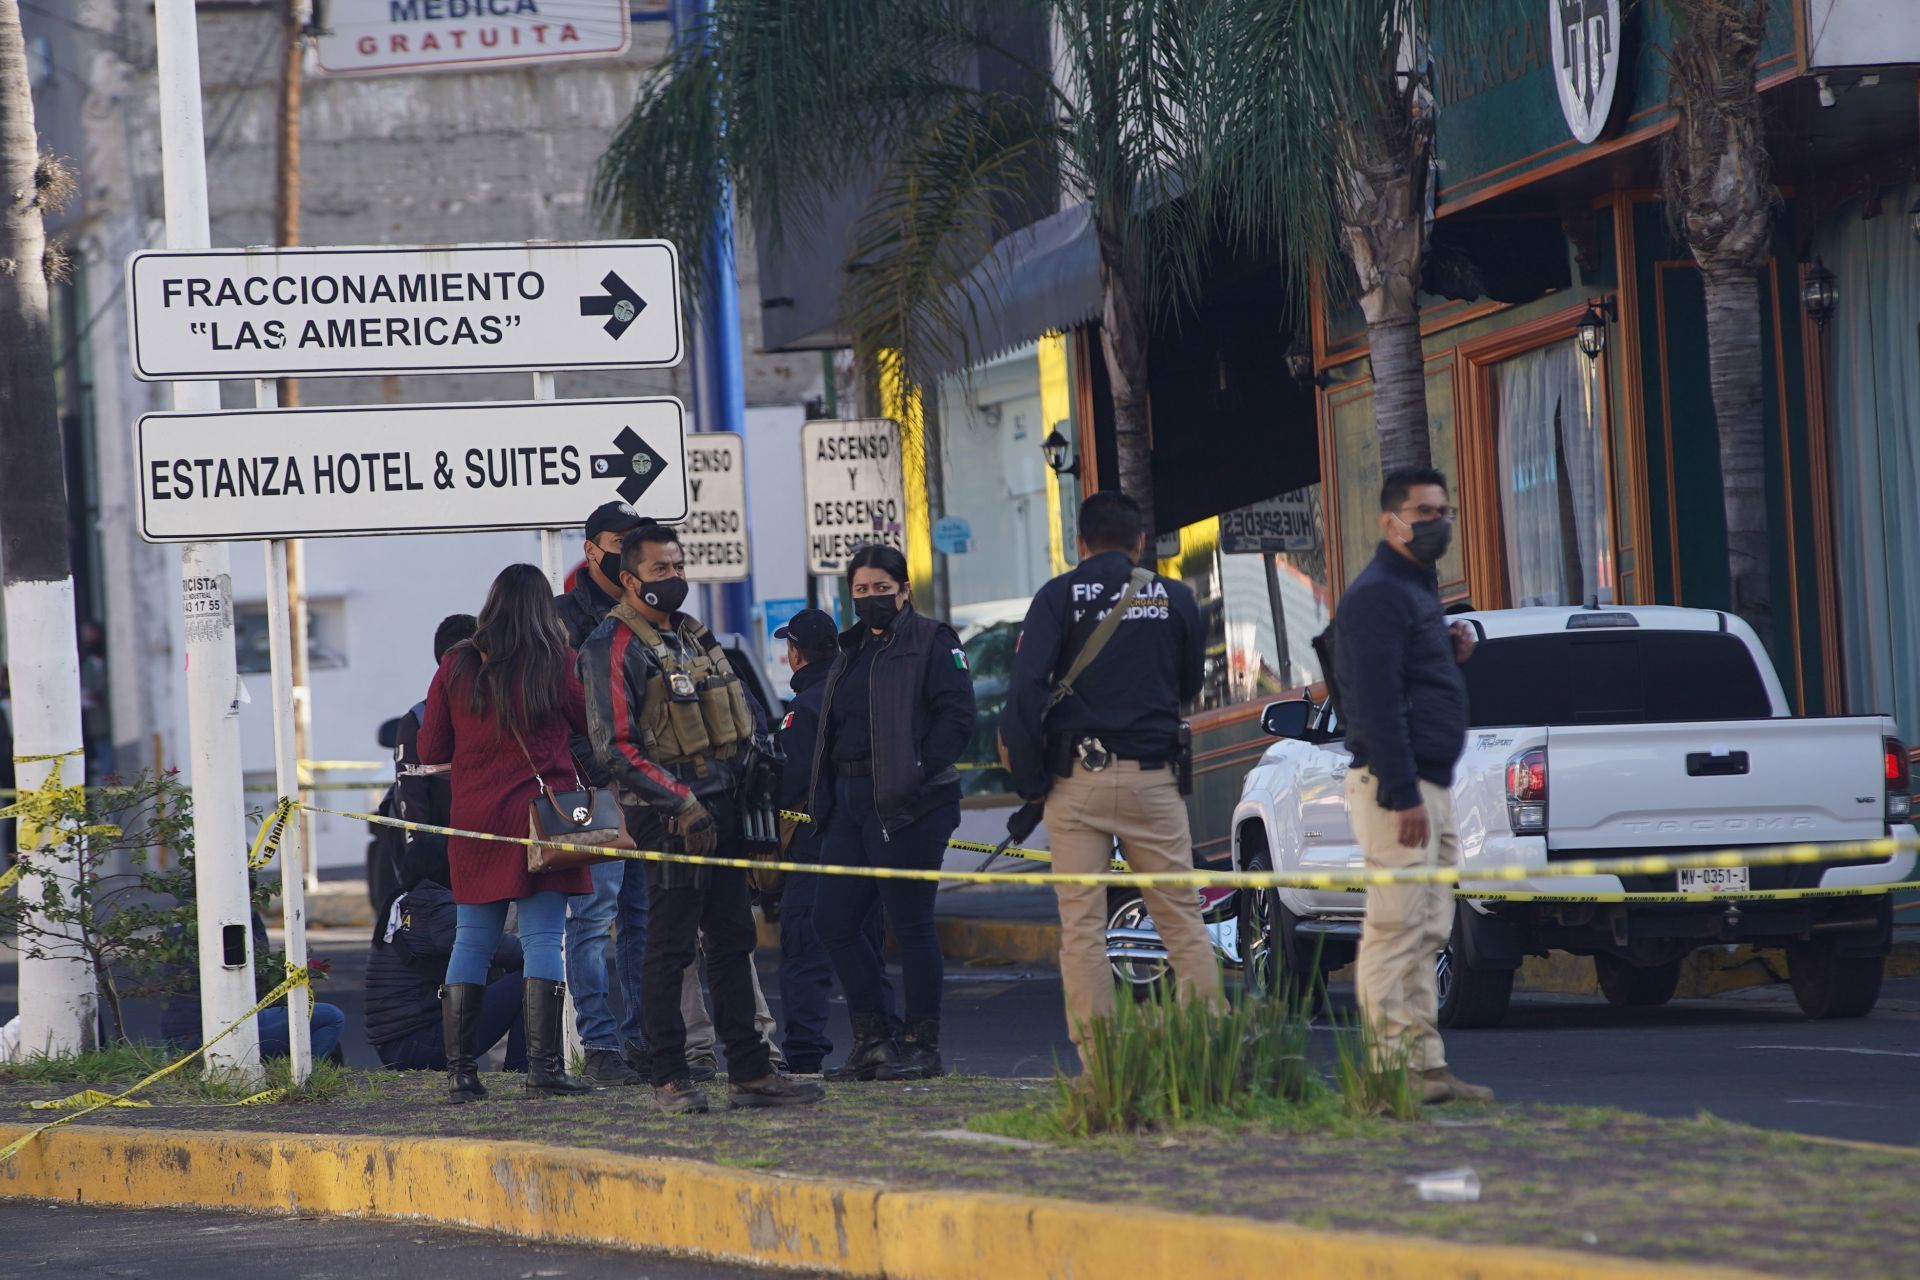 Ocurrió alrededor de las 03:30 horas en la Av. Lic. Enrique Ramírez Miguel, cerca del centro comercial Las Américas (Foto: Cuartoscuro)